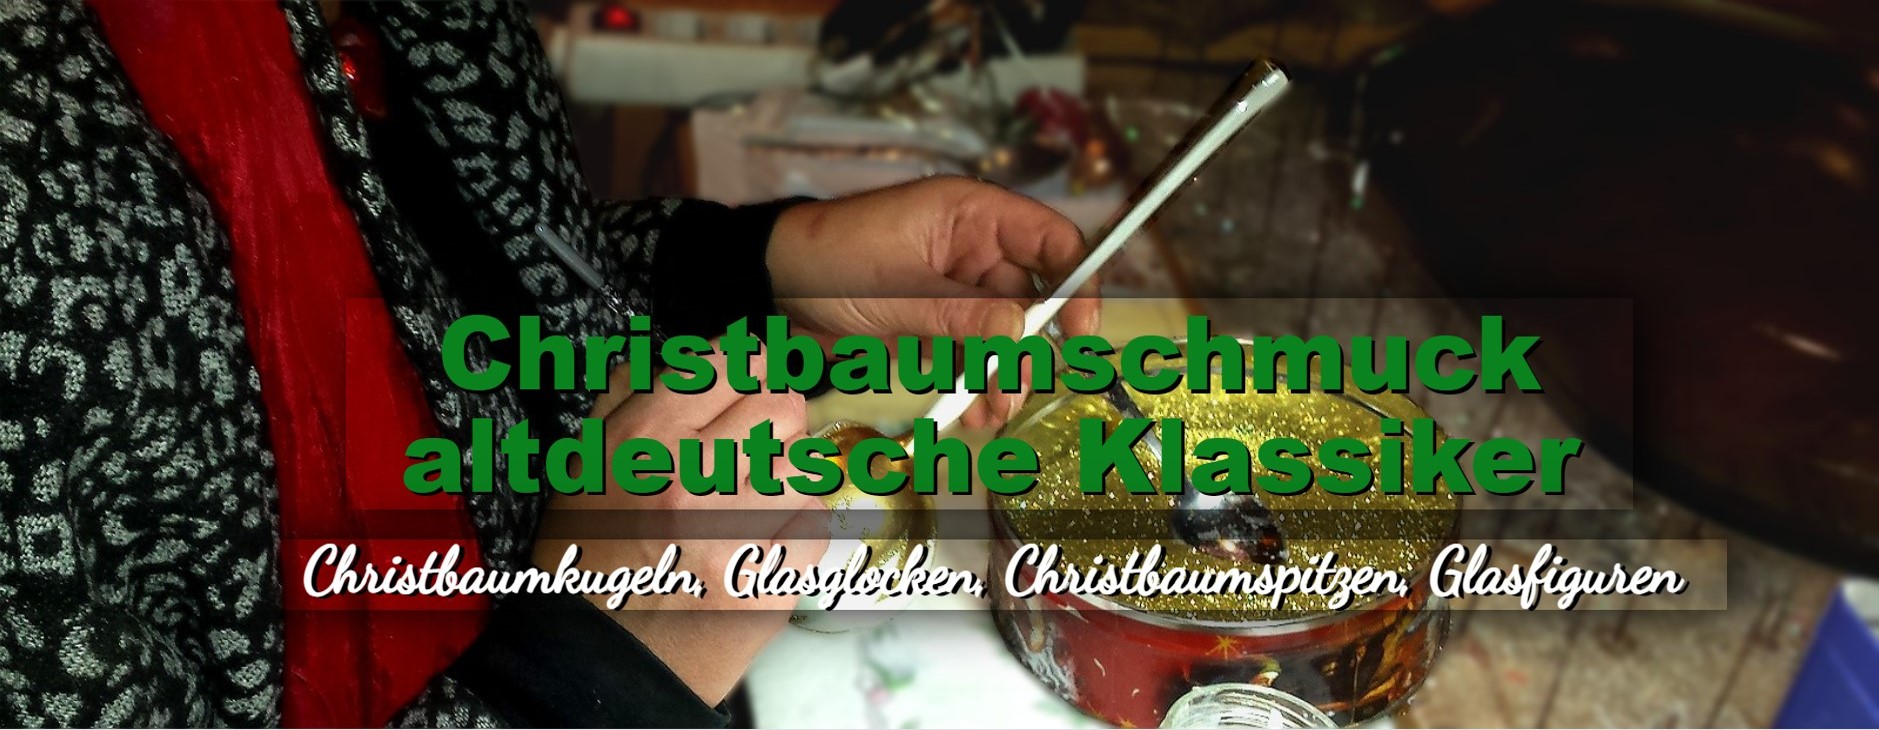 Christbaumschmuck Christbaumkugeln Christbaumspitzen Glasglocken Glasfiguren aus Lauschaer Glas - Greiner-Mai GmbH DER CHRISTBAUM